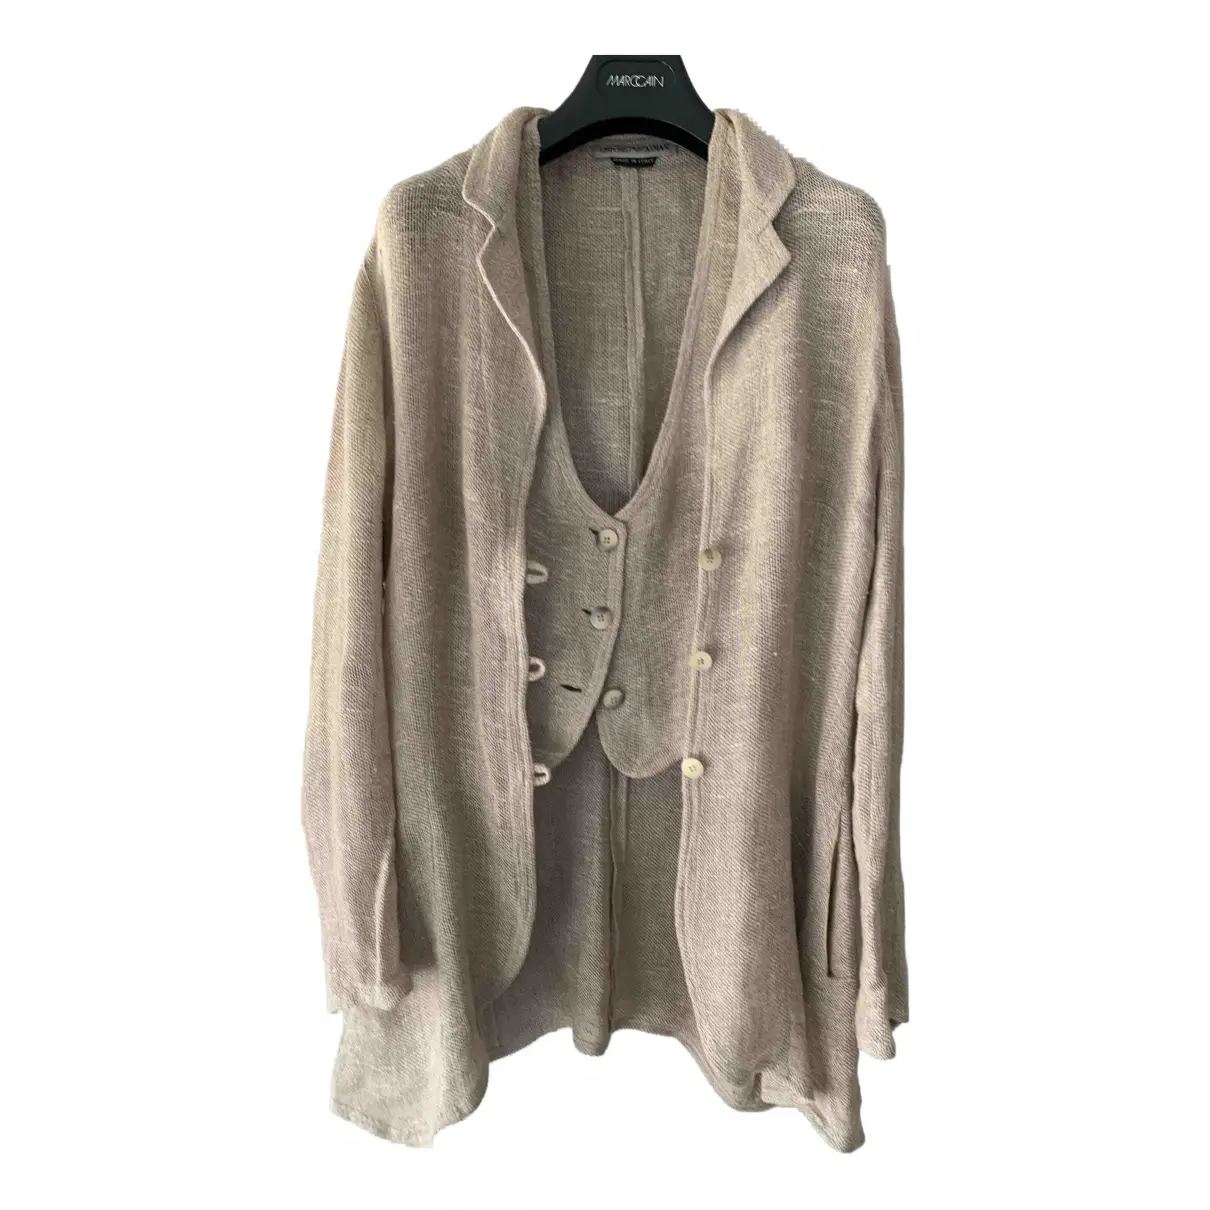 Buy Emporio Armani Linen jacket online - Vintage